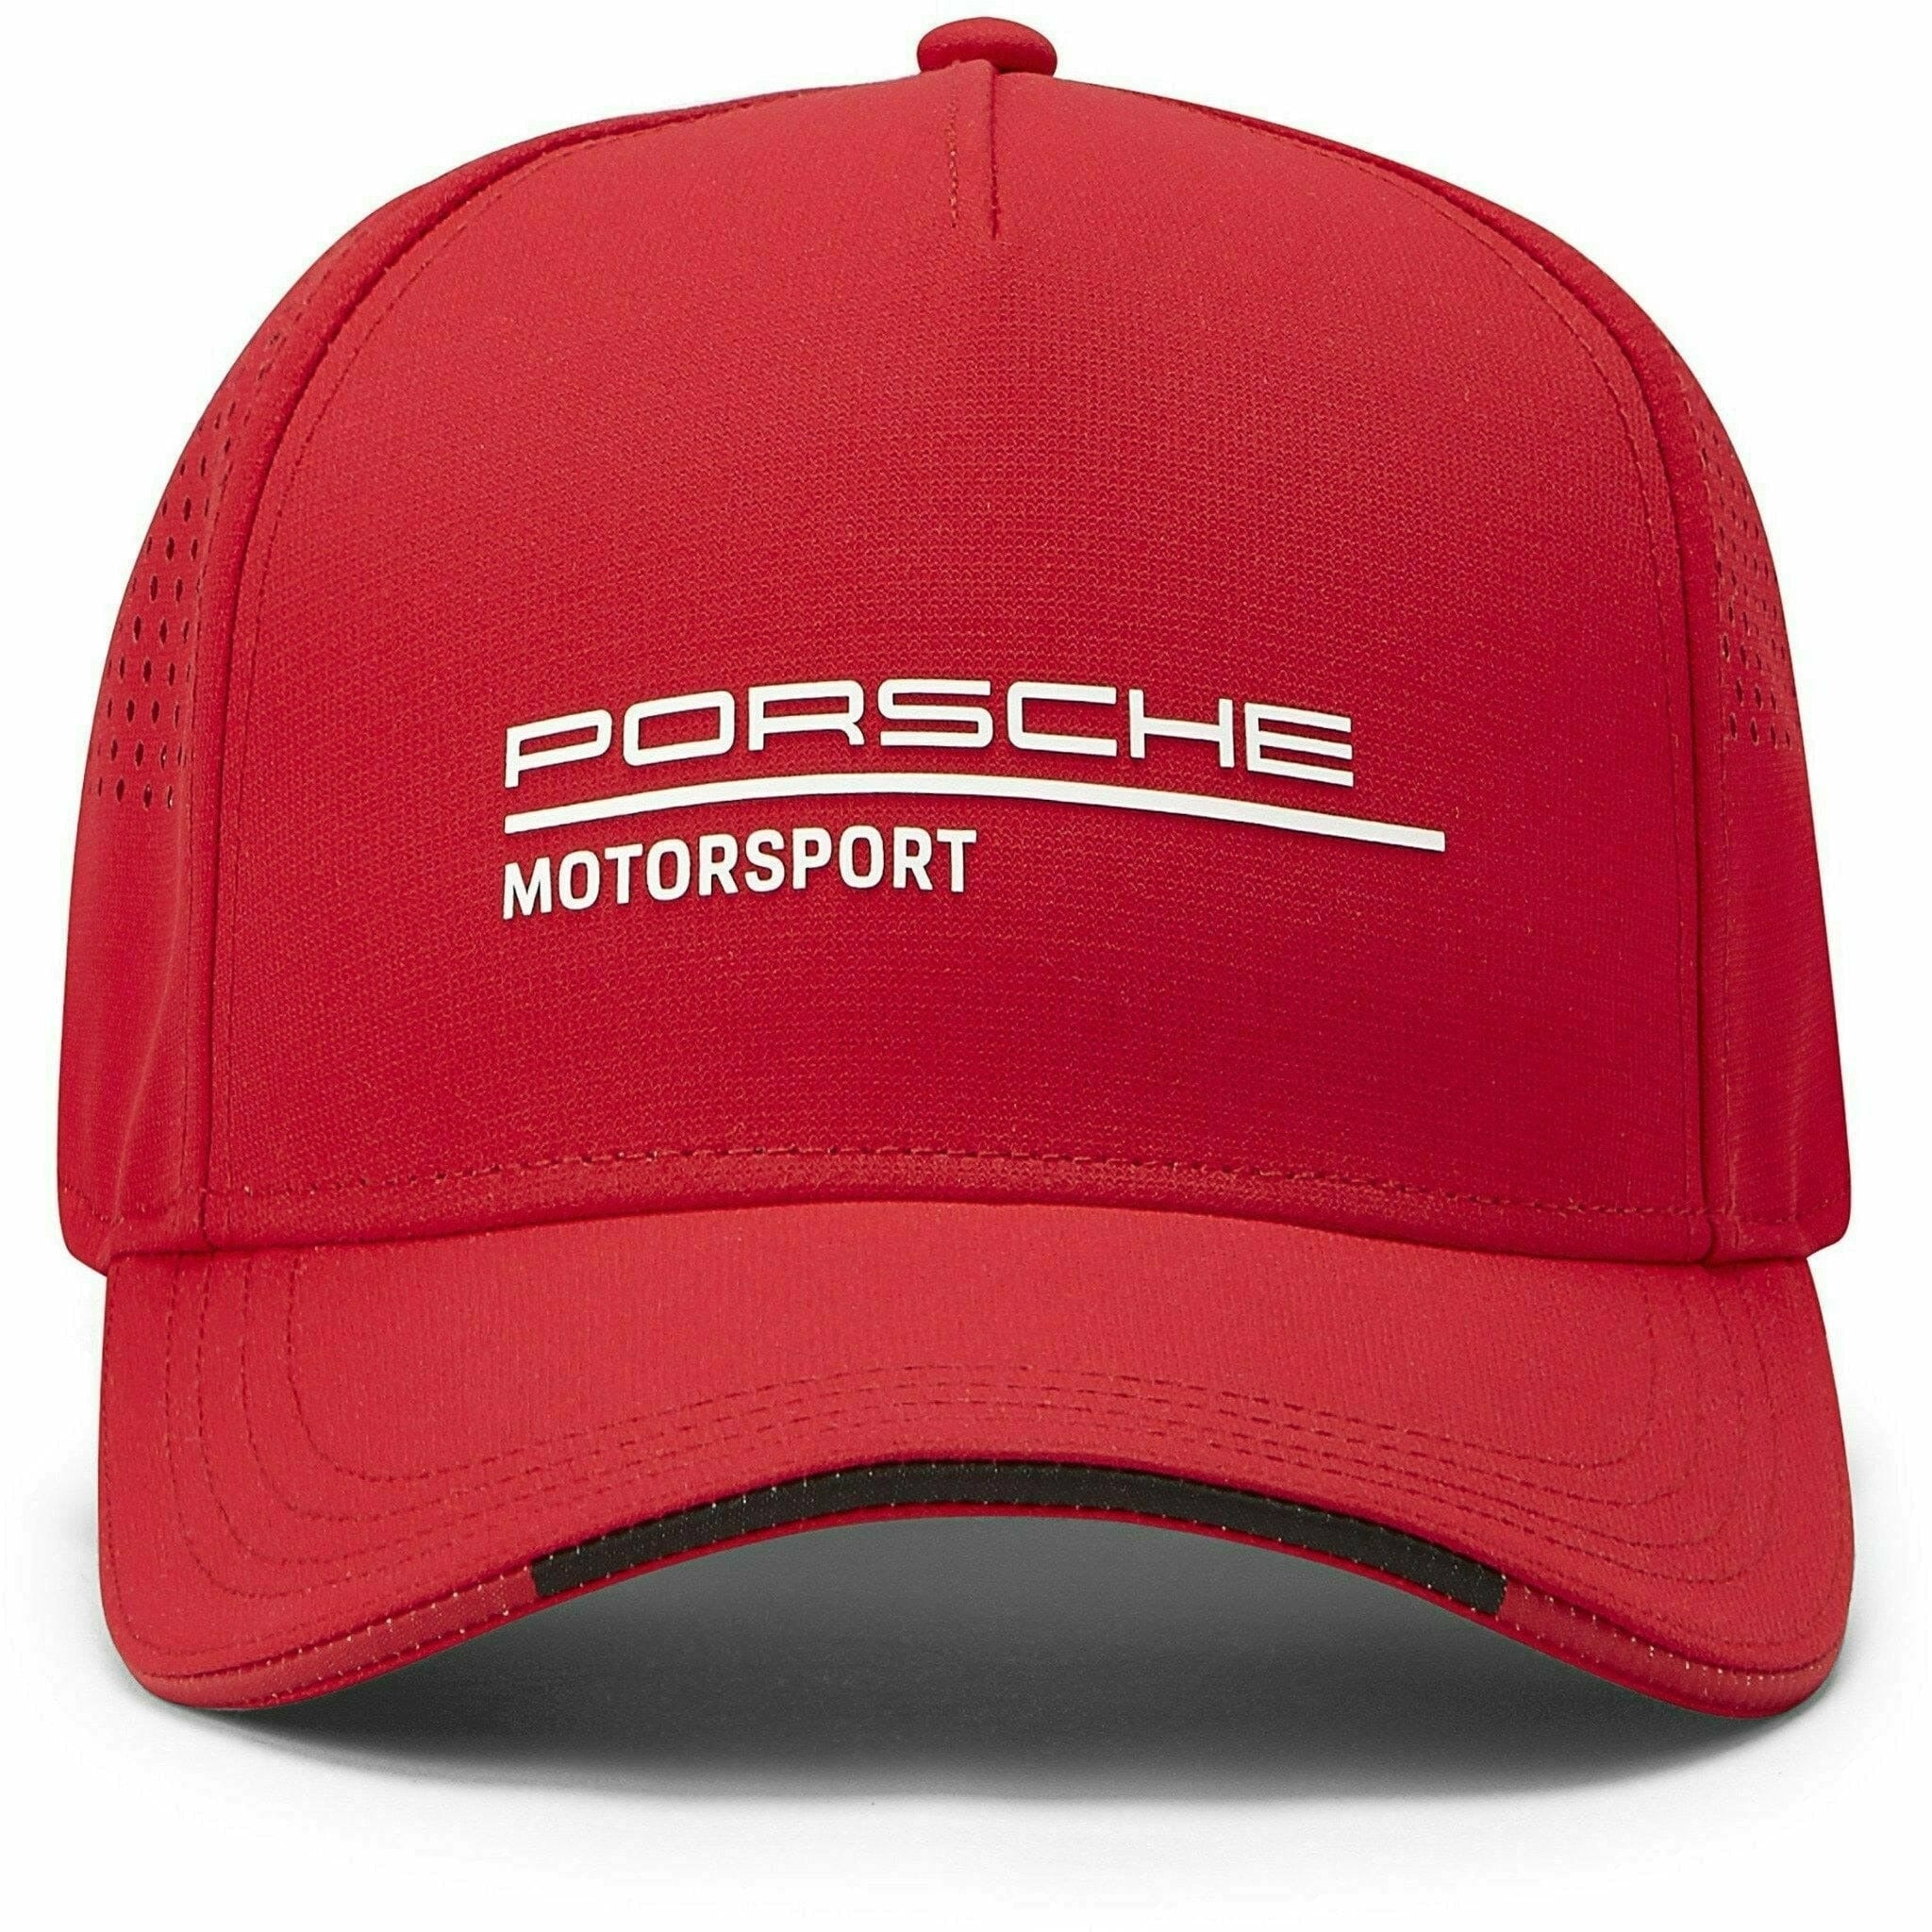 Porsche Motorsports Red Hat